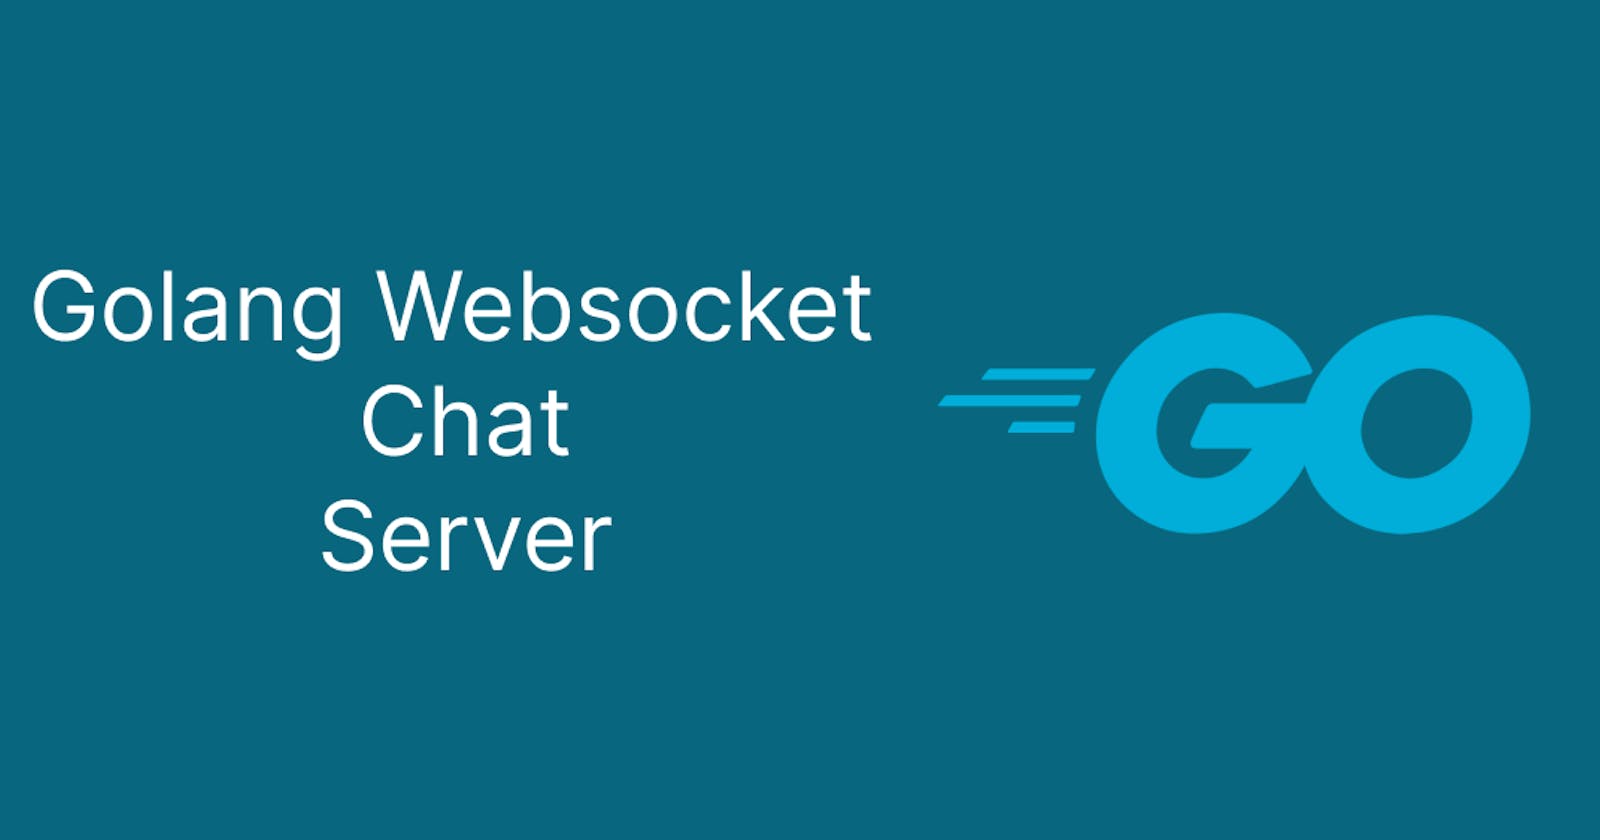 Golang Websocket chat server